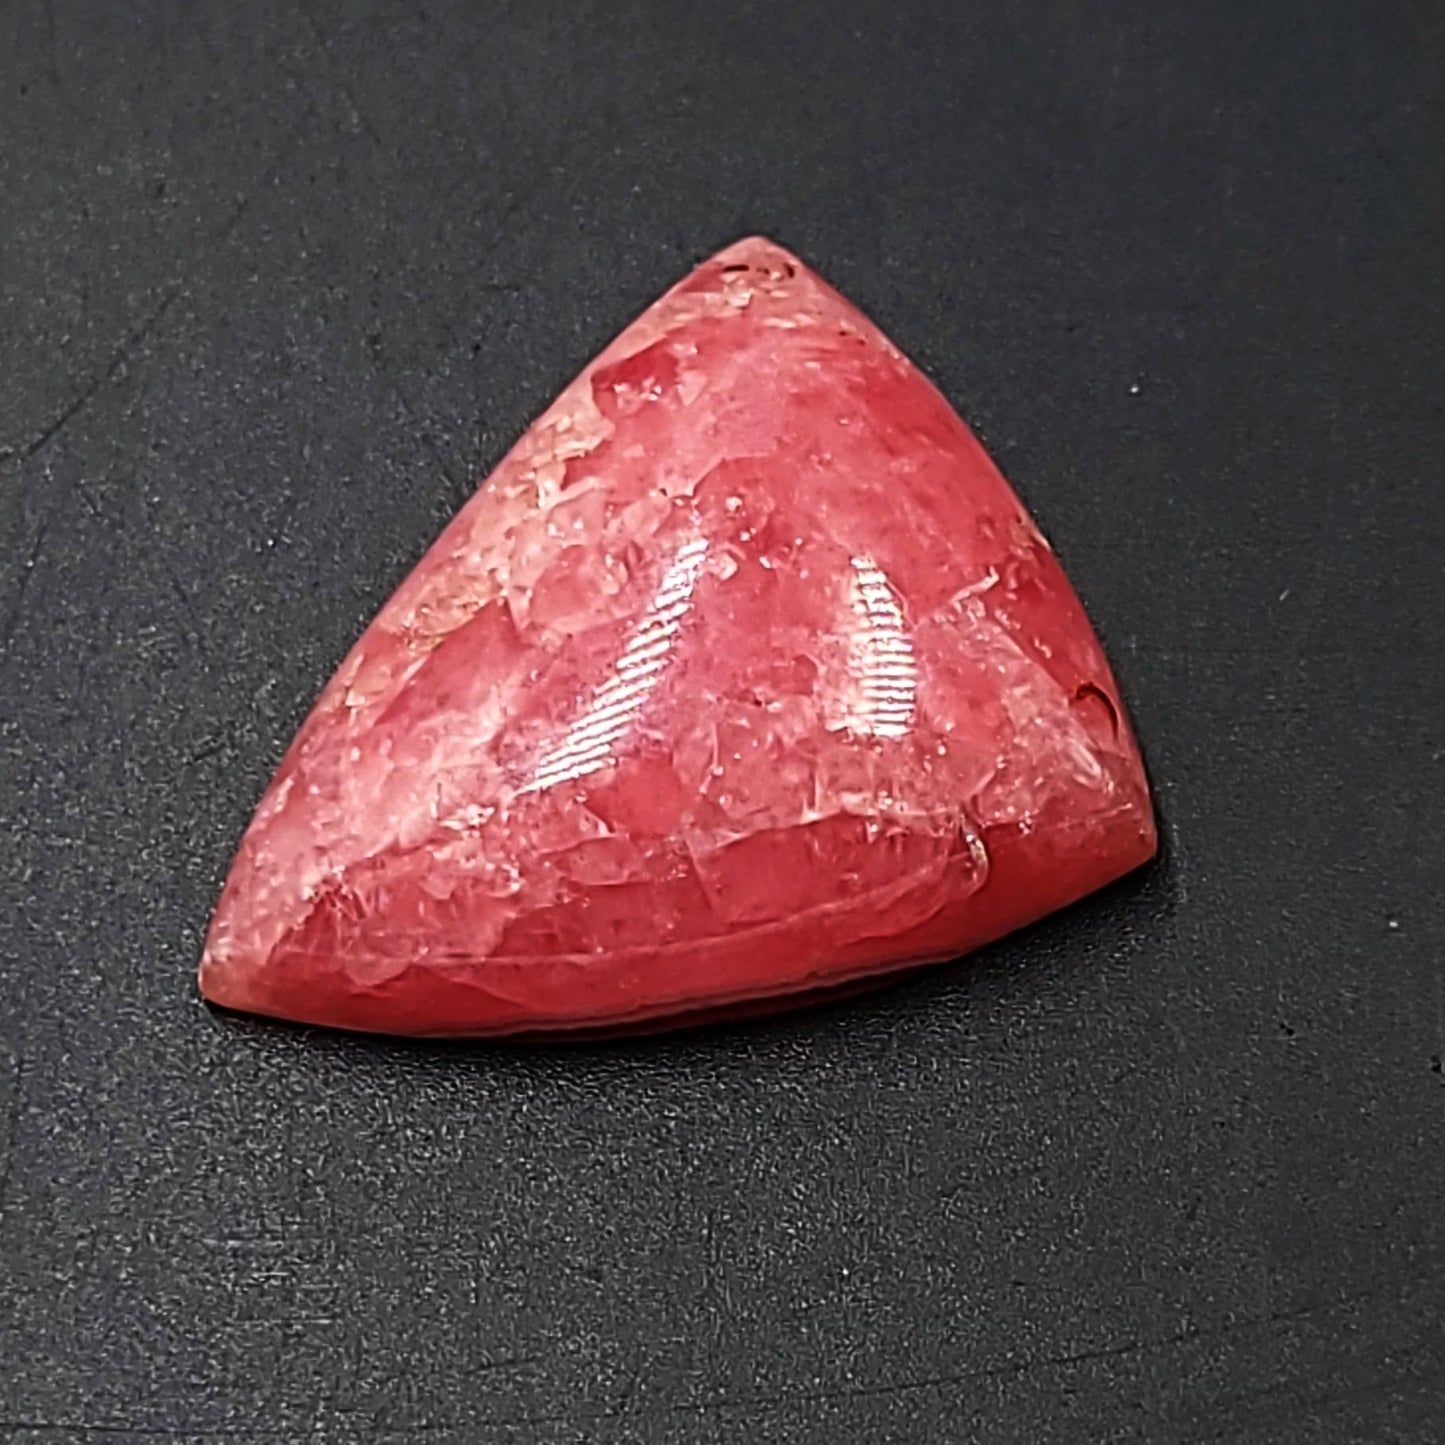 Rhodochrosite Cabochon Free Form "Trillion" "HQ" Polished Cut Stone